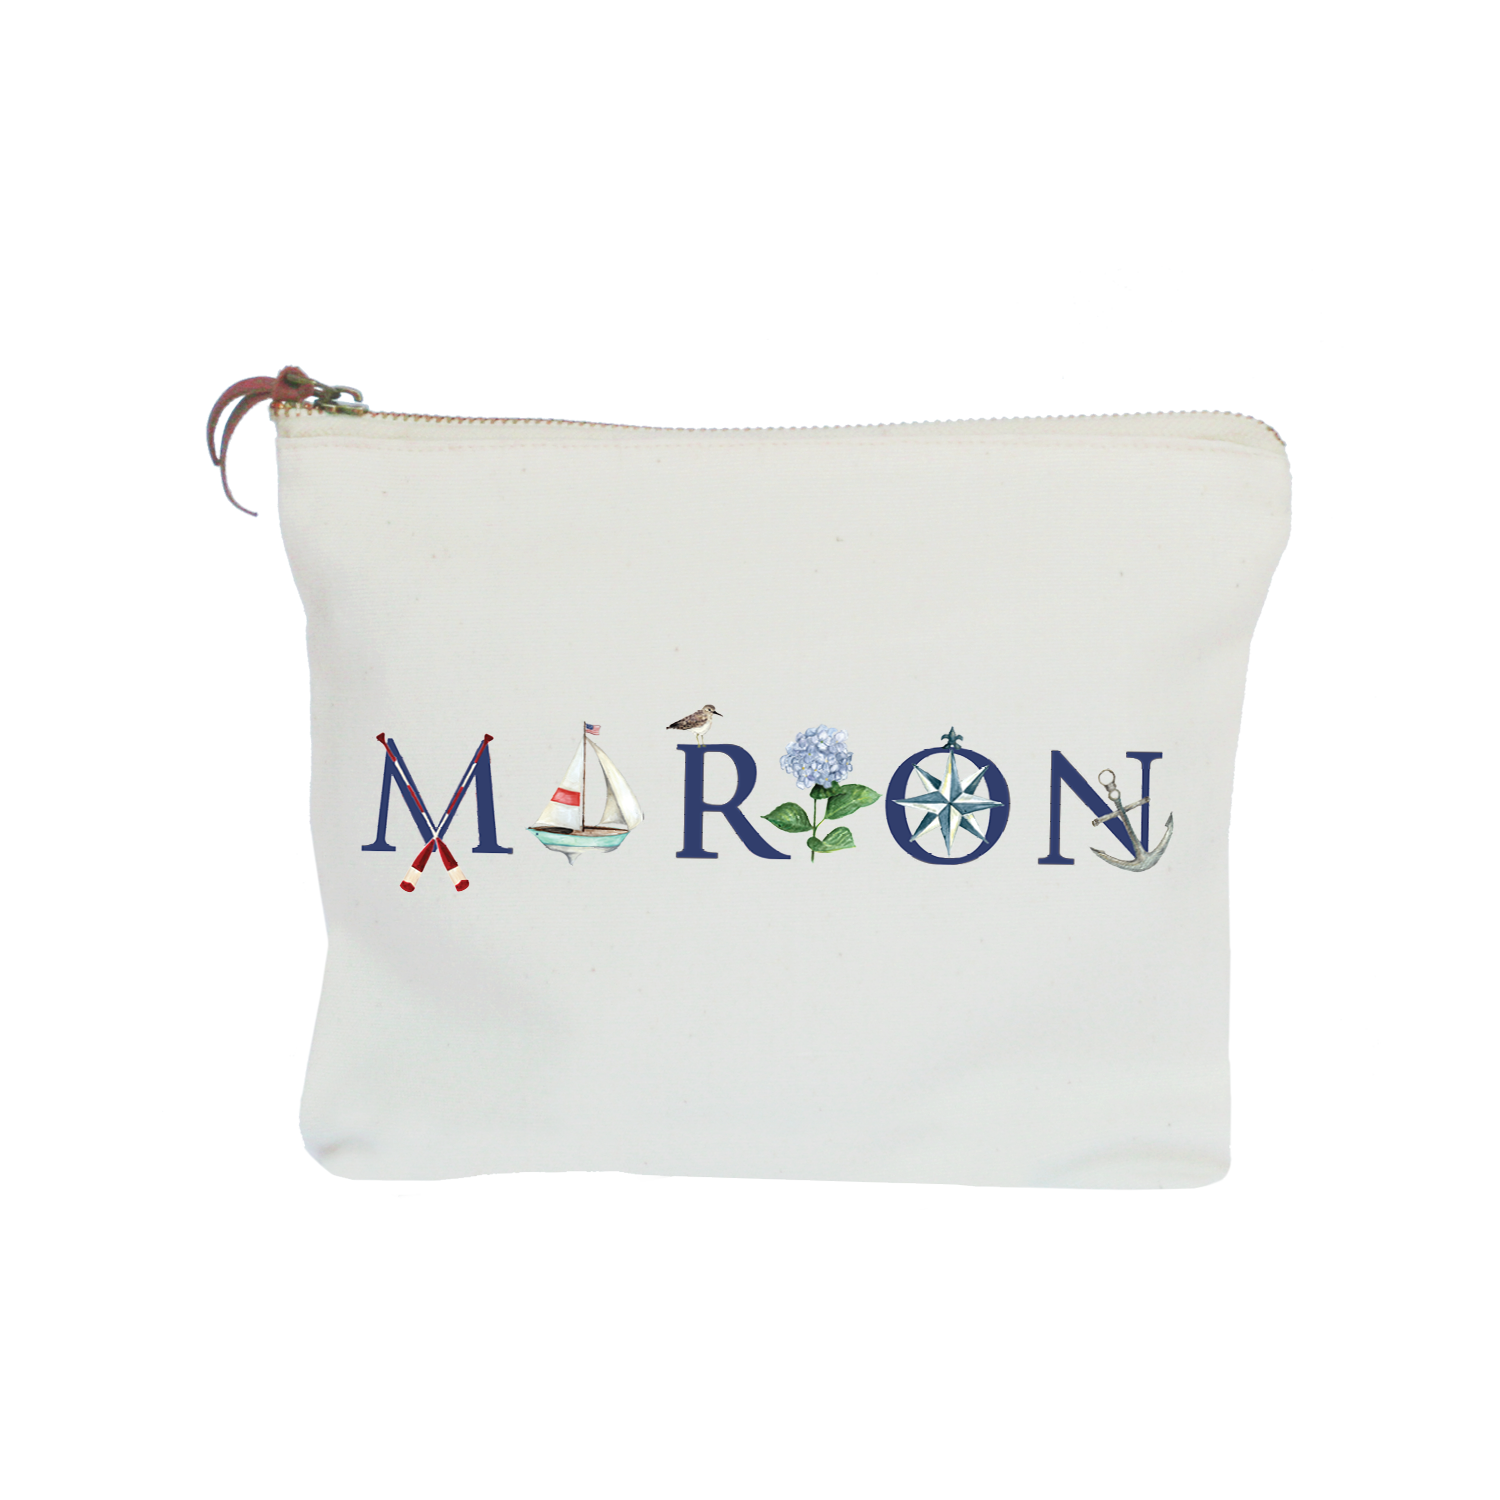 Marion zipper pouch